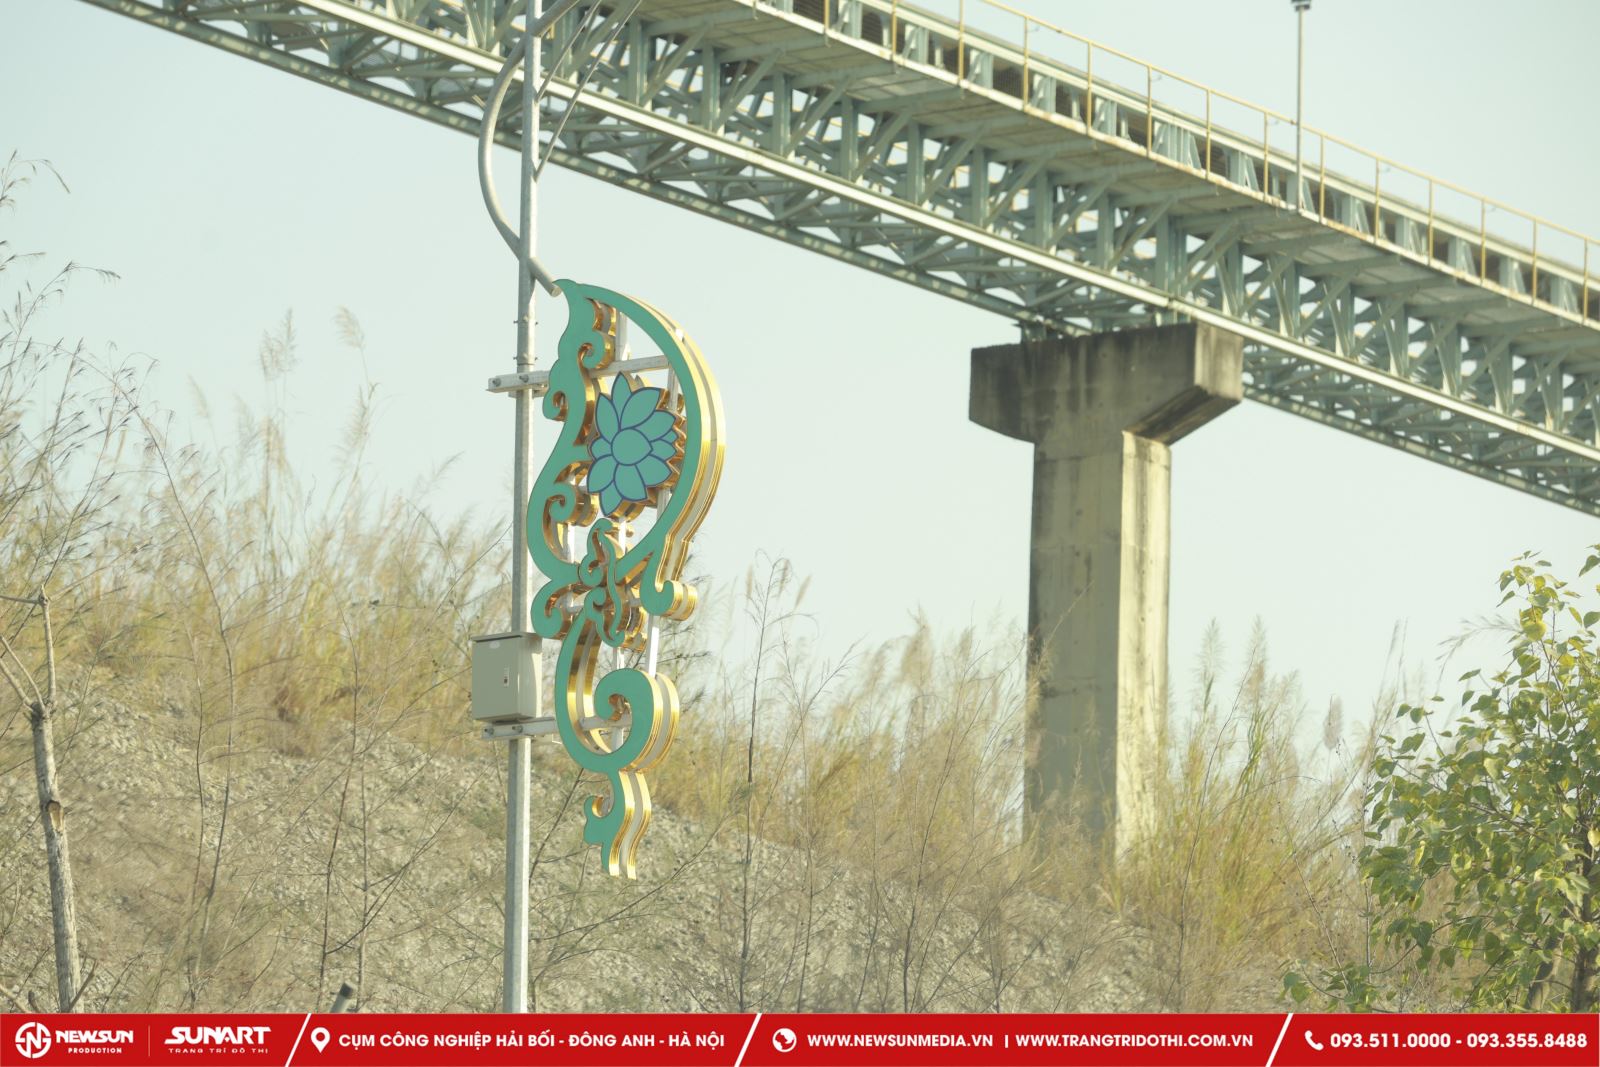 hình ảnh hoa văn trang trí cột điện đẹp, ấn tượng tại huyện Thủy Nguyên, Hải Phòng8